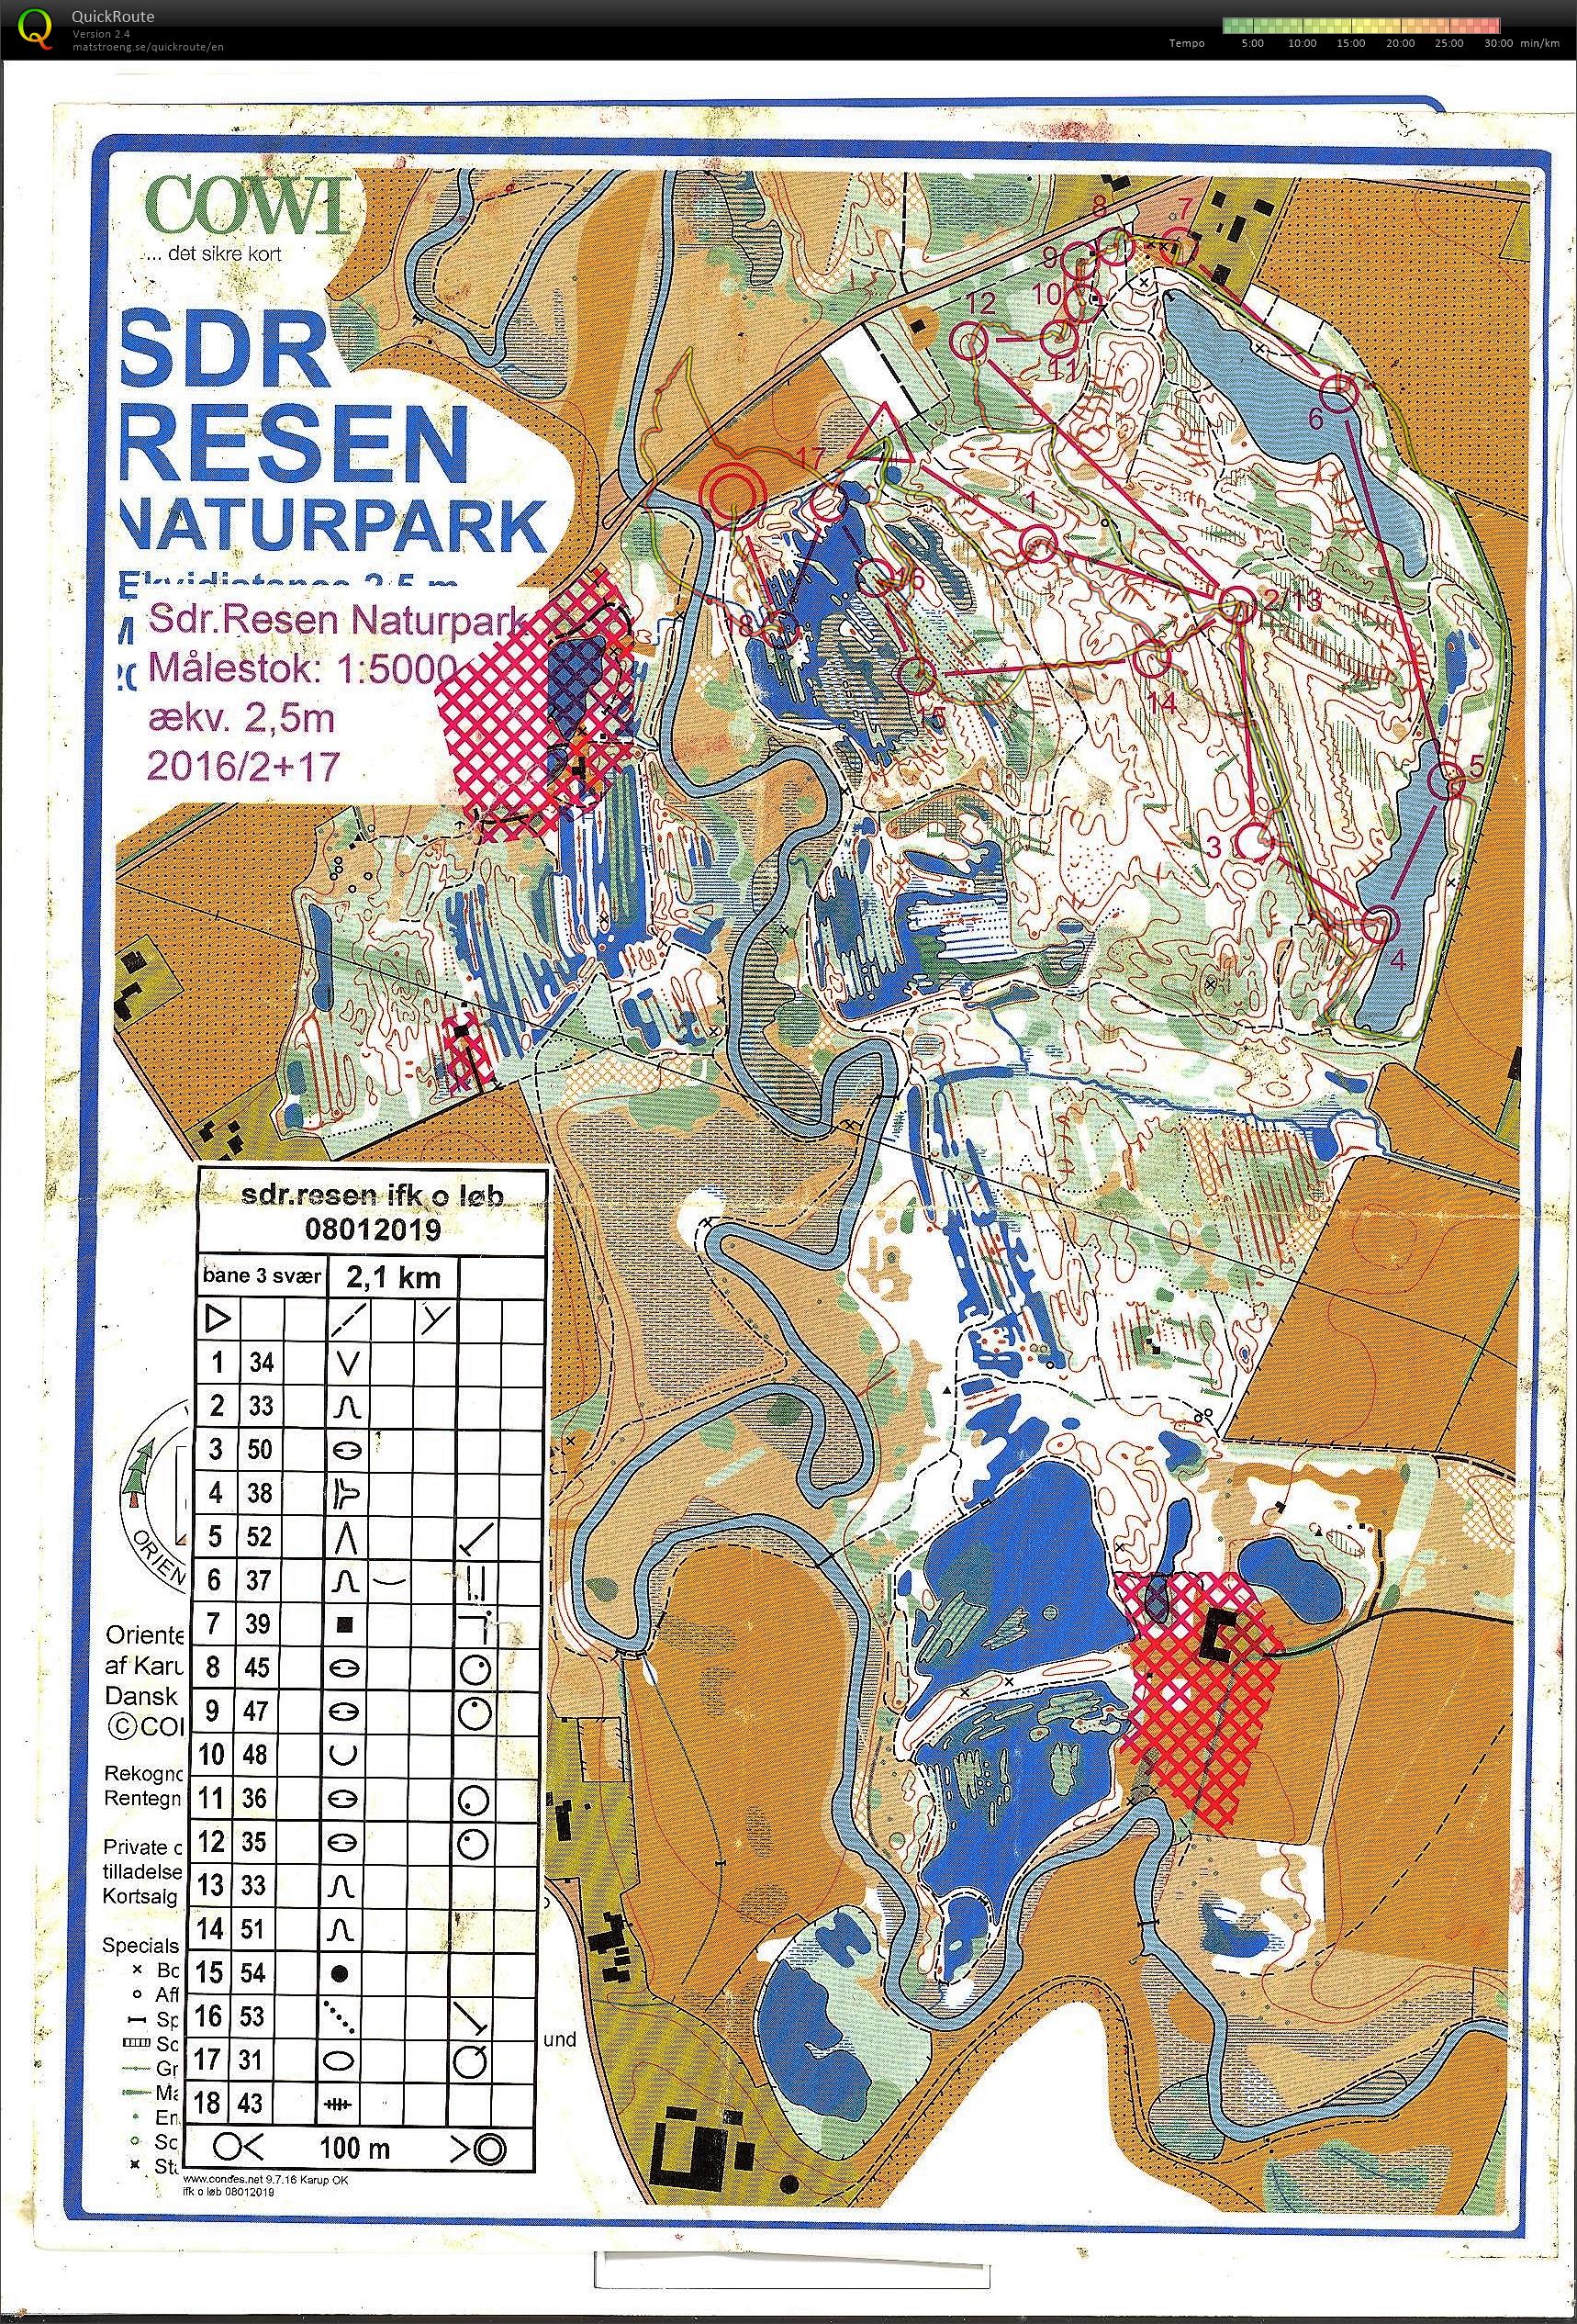 Resen Naturpark (08-01-2019)